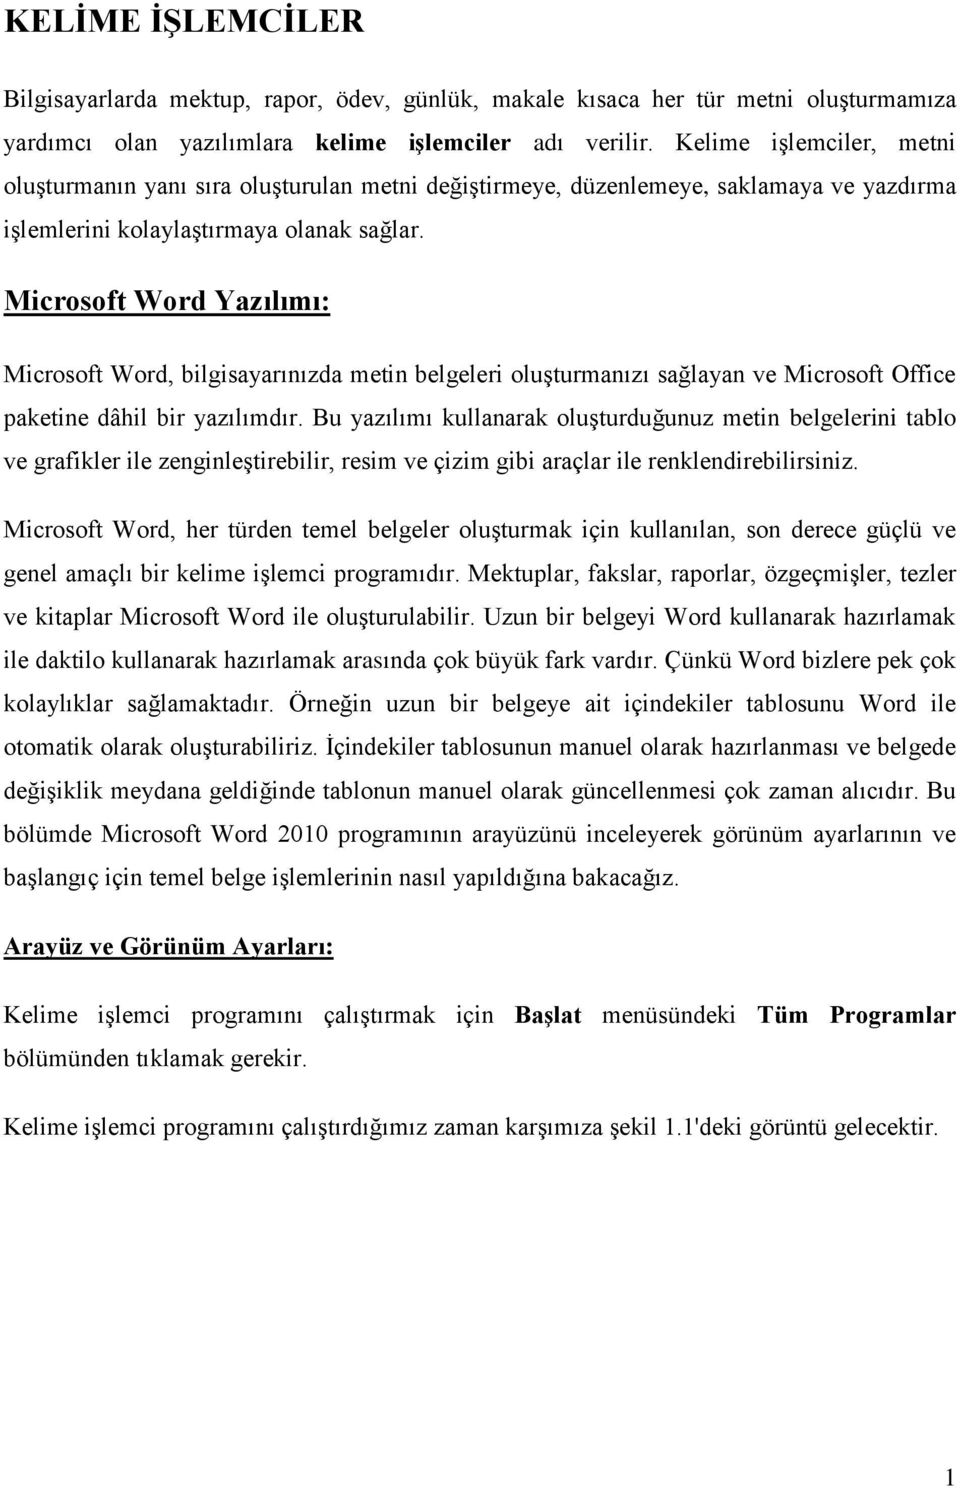 Microsoft Word Yazılımı: Microsoft Word, bilgisayarınızda metin belgeleri oluşturmanızı sağlayan ve Microsoft Office paketine dâhil bir yazılımdır.